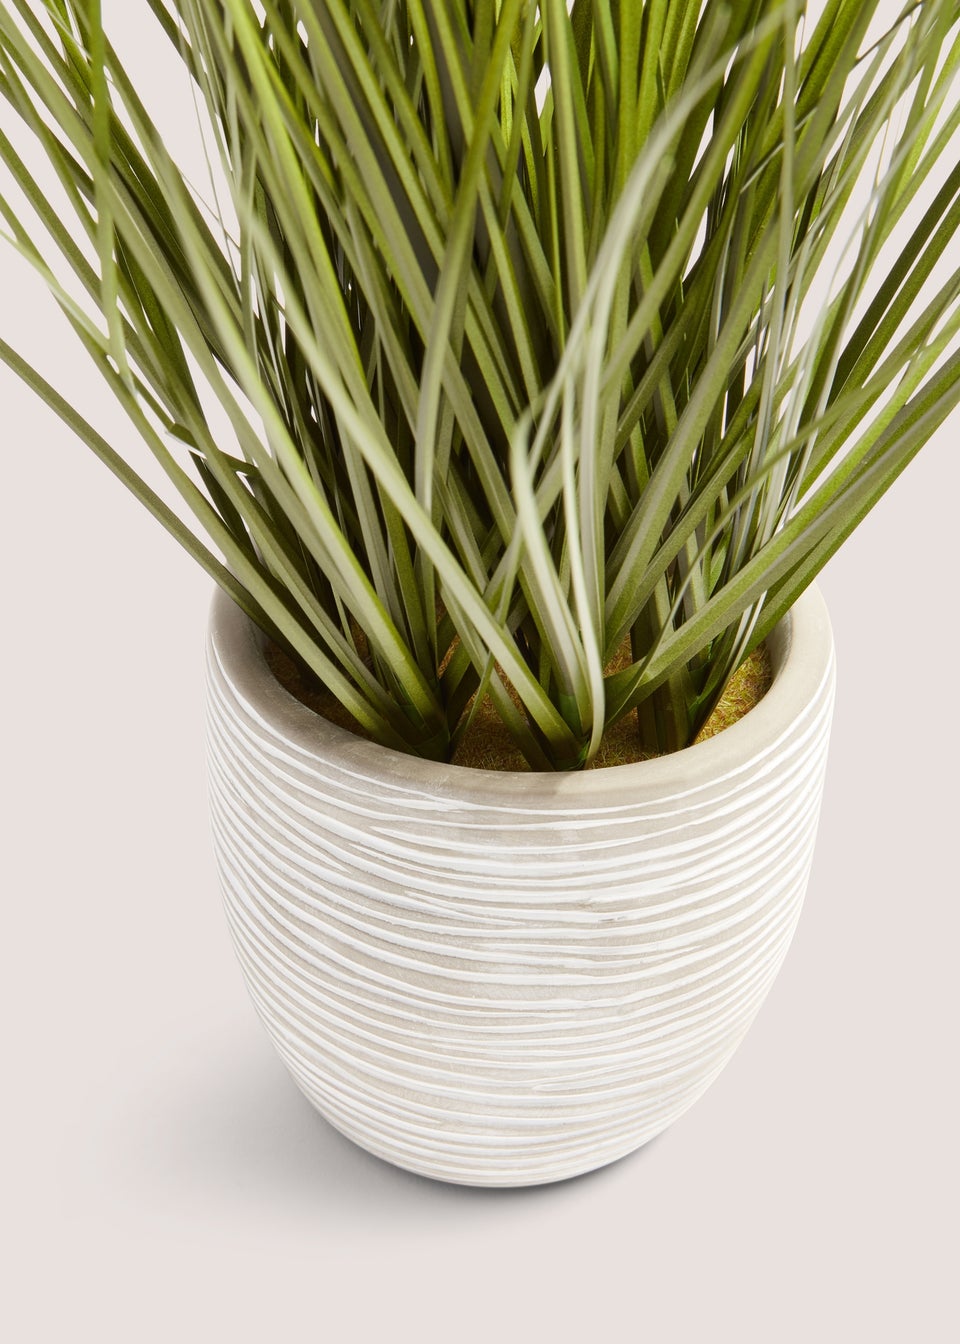 White Cement Pot With Grass (32cm x 16cm x 16cm)